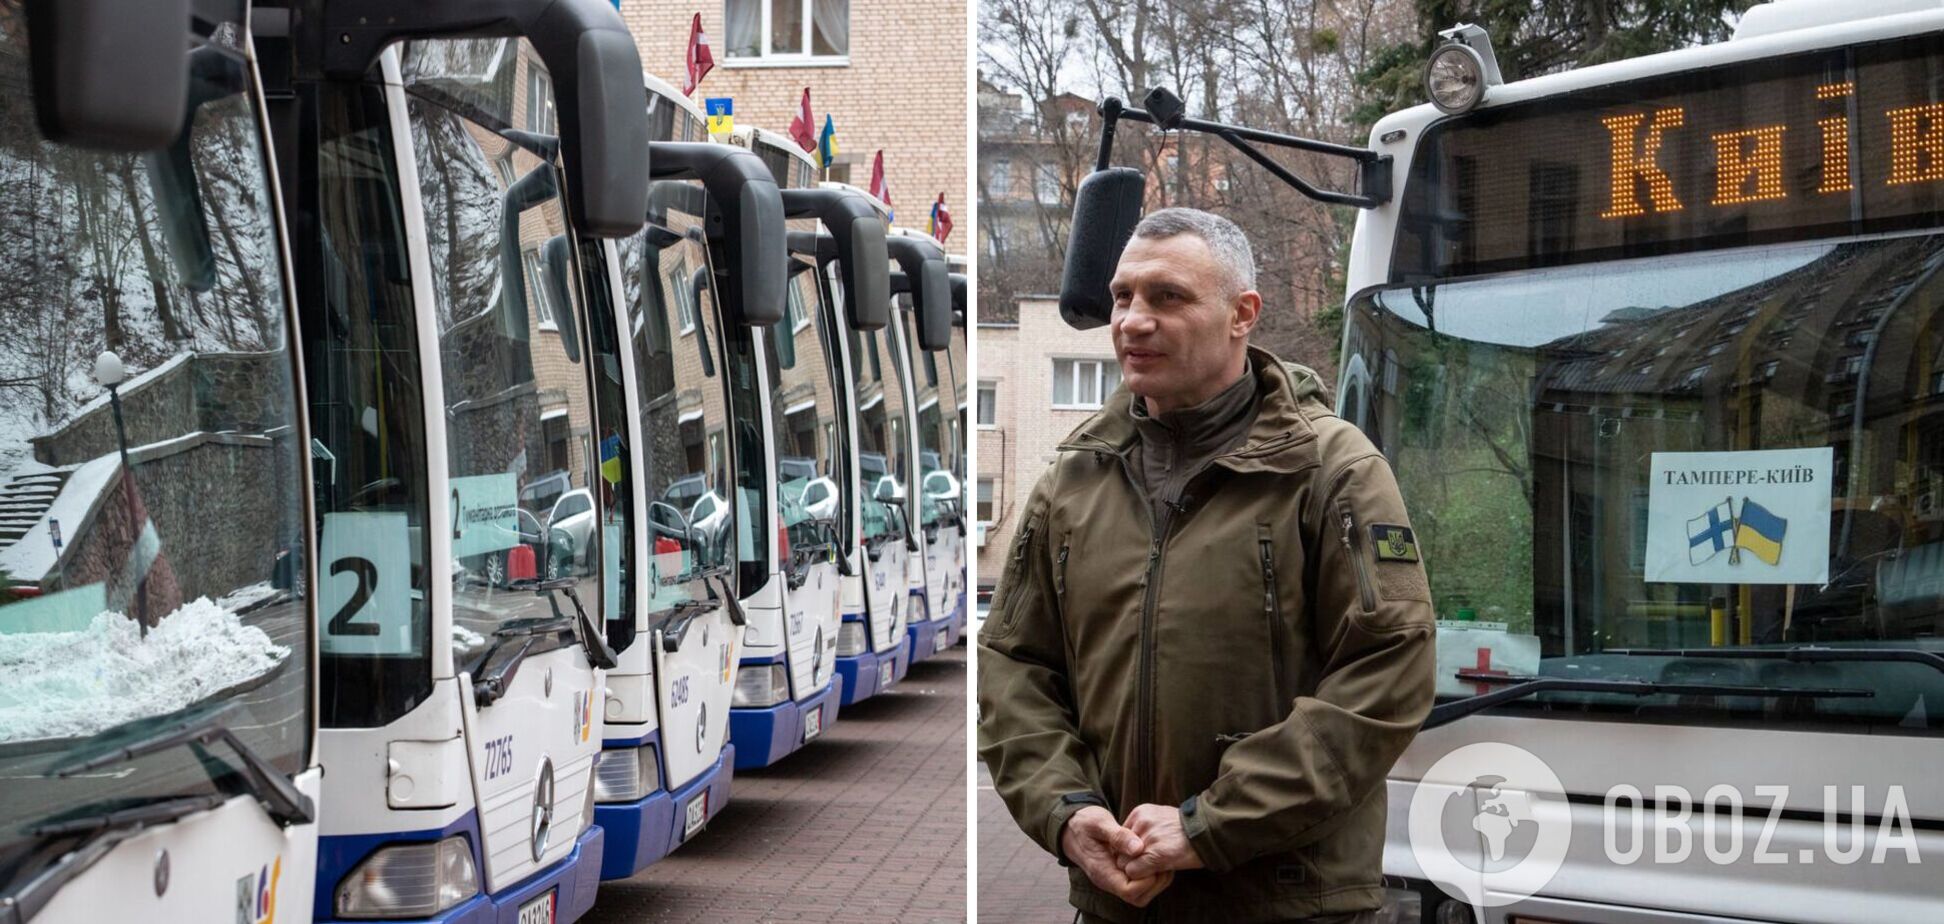 Завтра на міські маршрути вийдуть ще 13 автобусів, отриманих Києвом від міжнародних партнерів, – Кличко